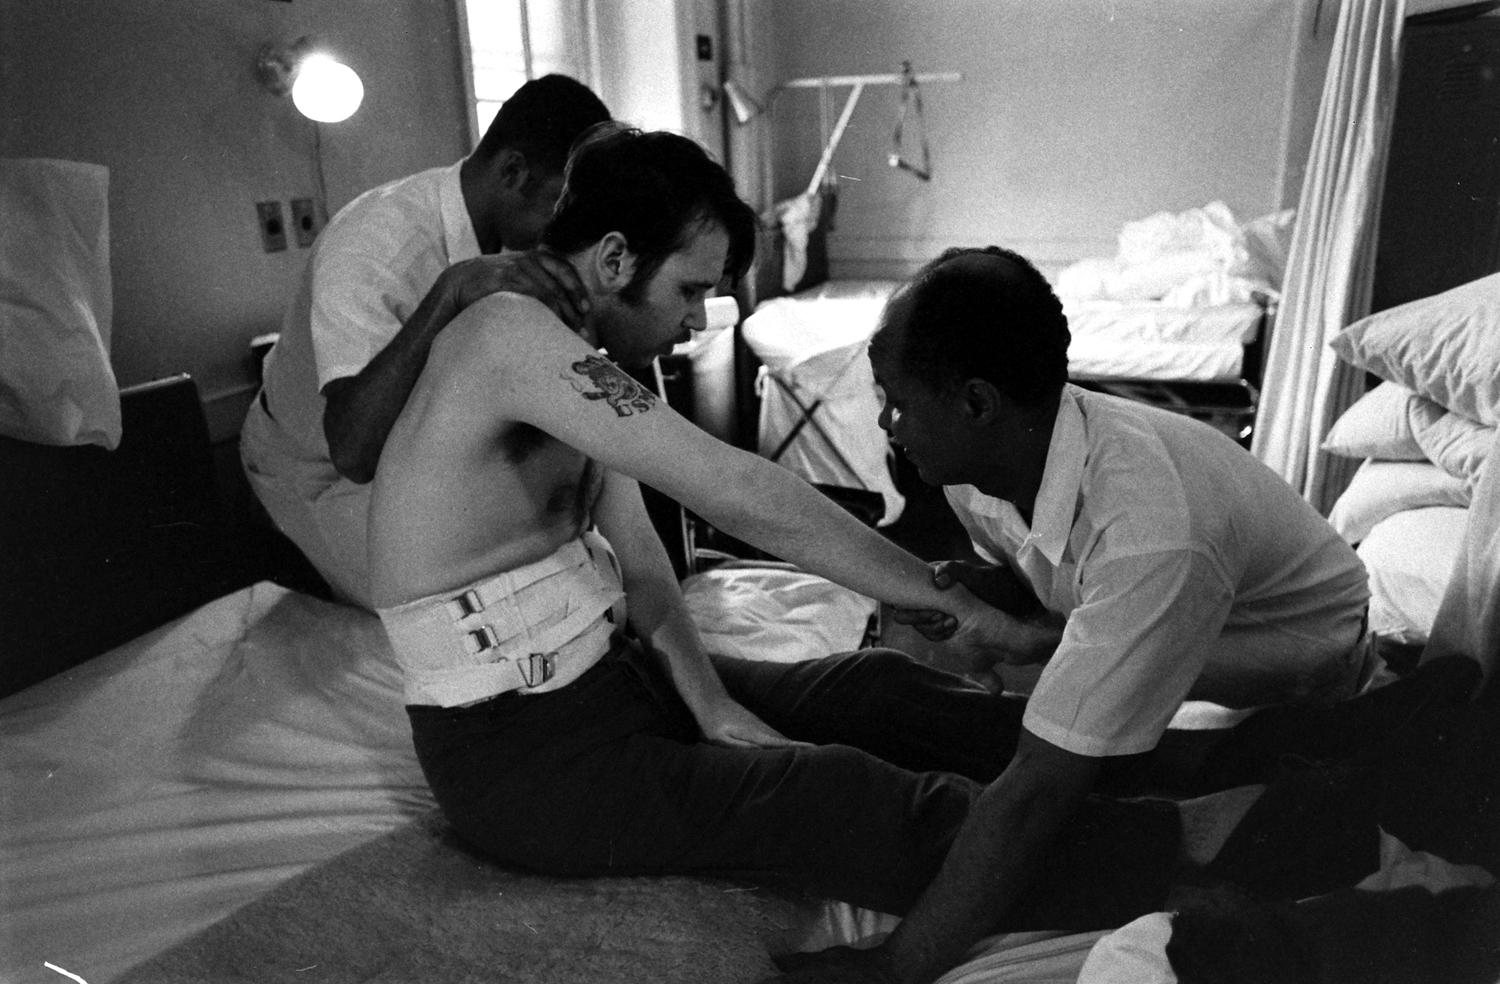 Scene from a VA hospital, The Bronx, 1970.